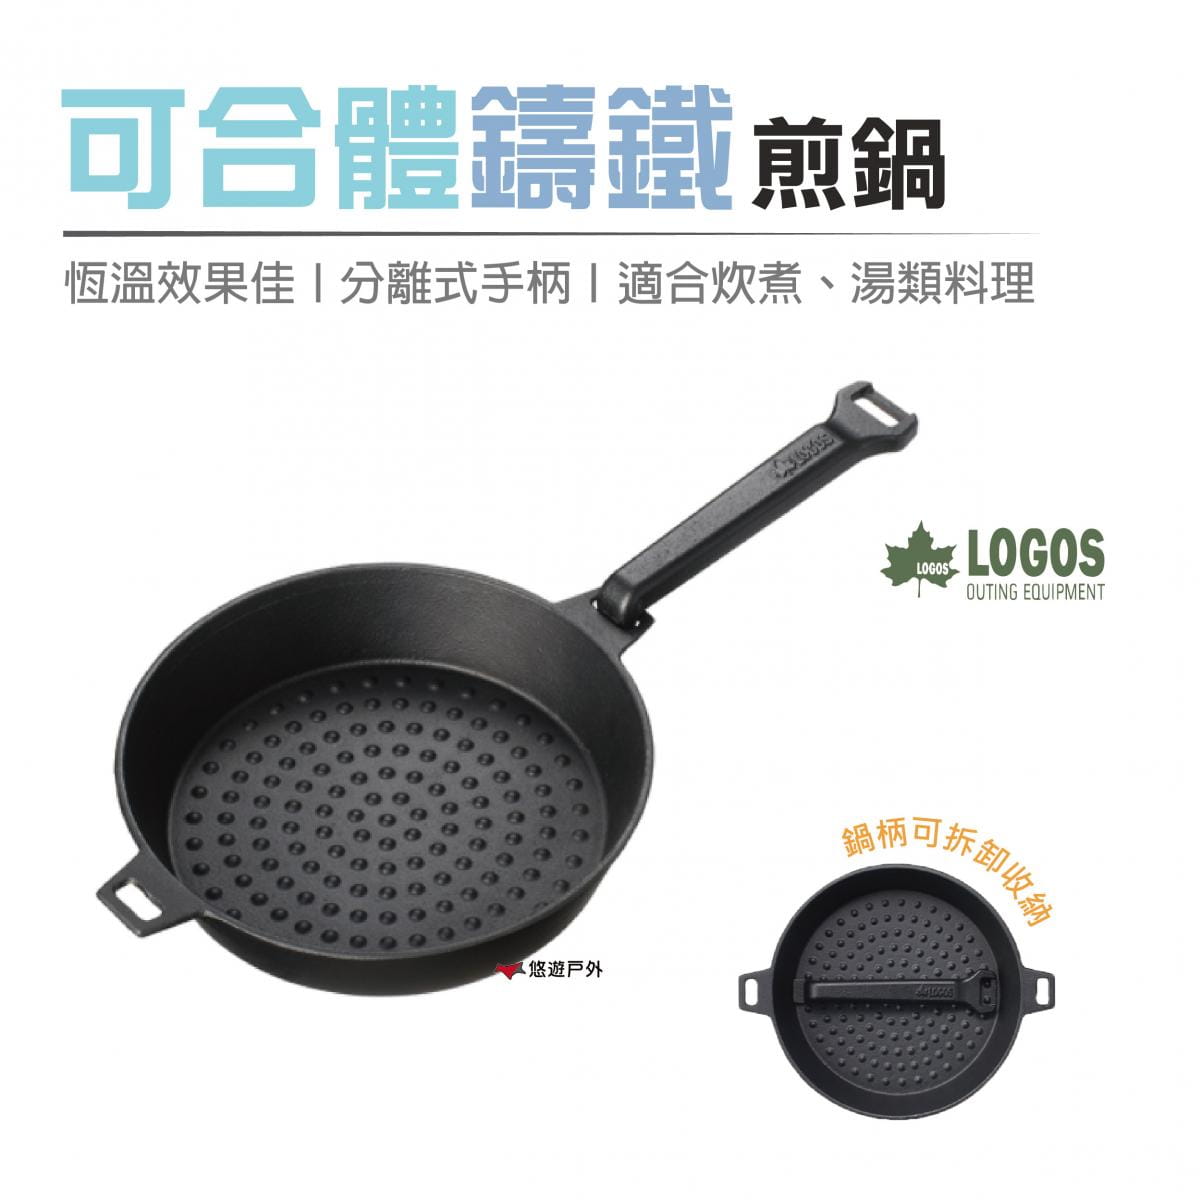 【日本LOGOS】 可合體鑄鐵煎鍋M(22cm)_LG81062235 (悠遊戶外) 0